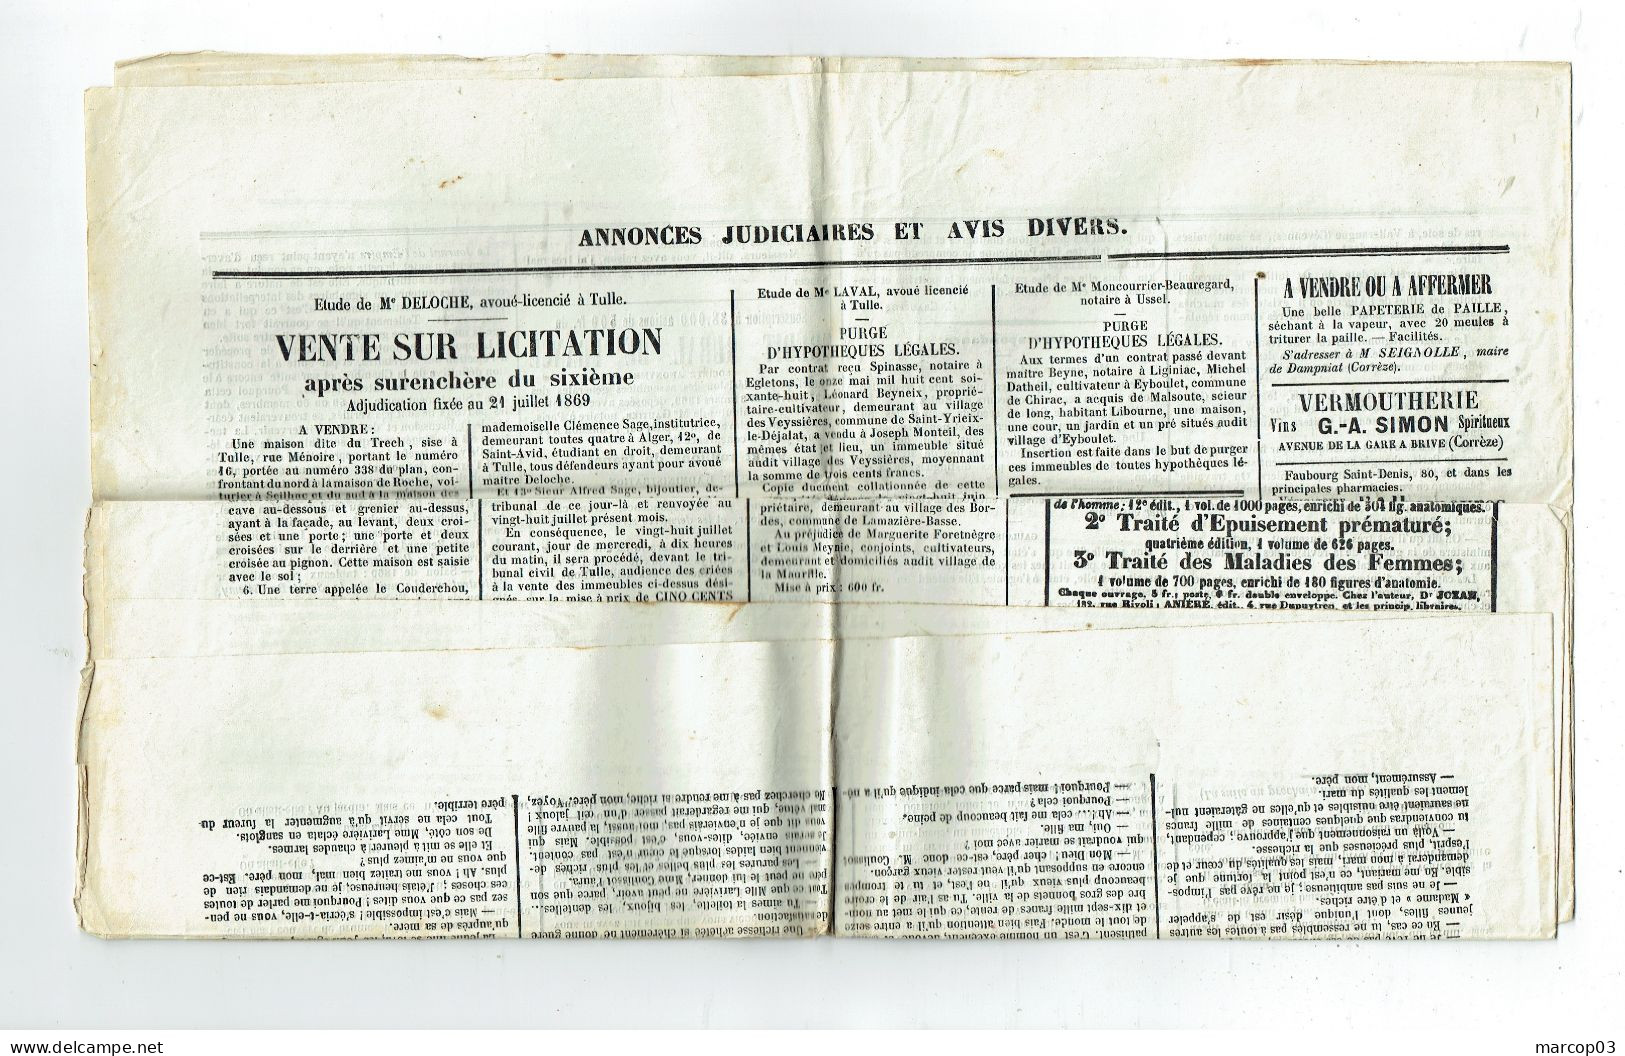 19 CORREZE Journal Le Corréziren Du 10/07/1869 Timbre Bleu 2 C (Fiscal 3c Port Postal 2c) Belle Pièce Journal Complet - Journaux